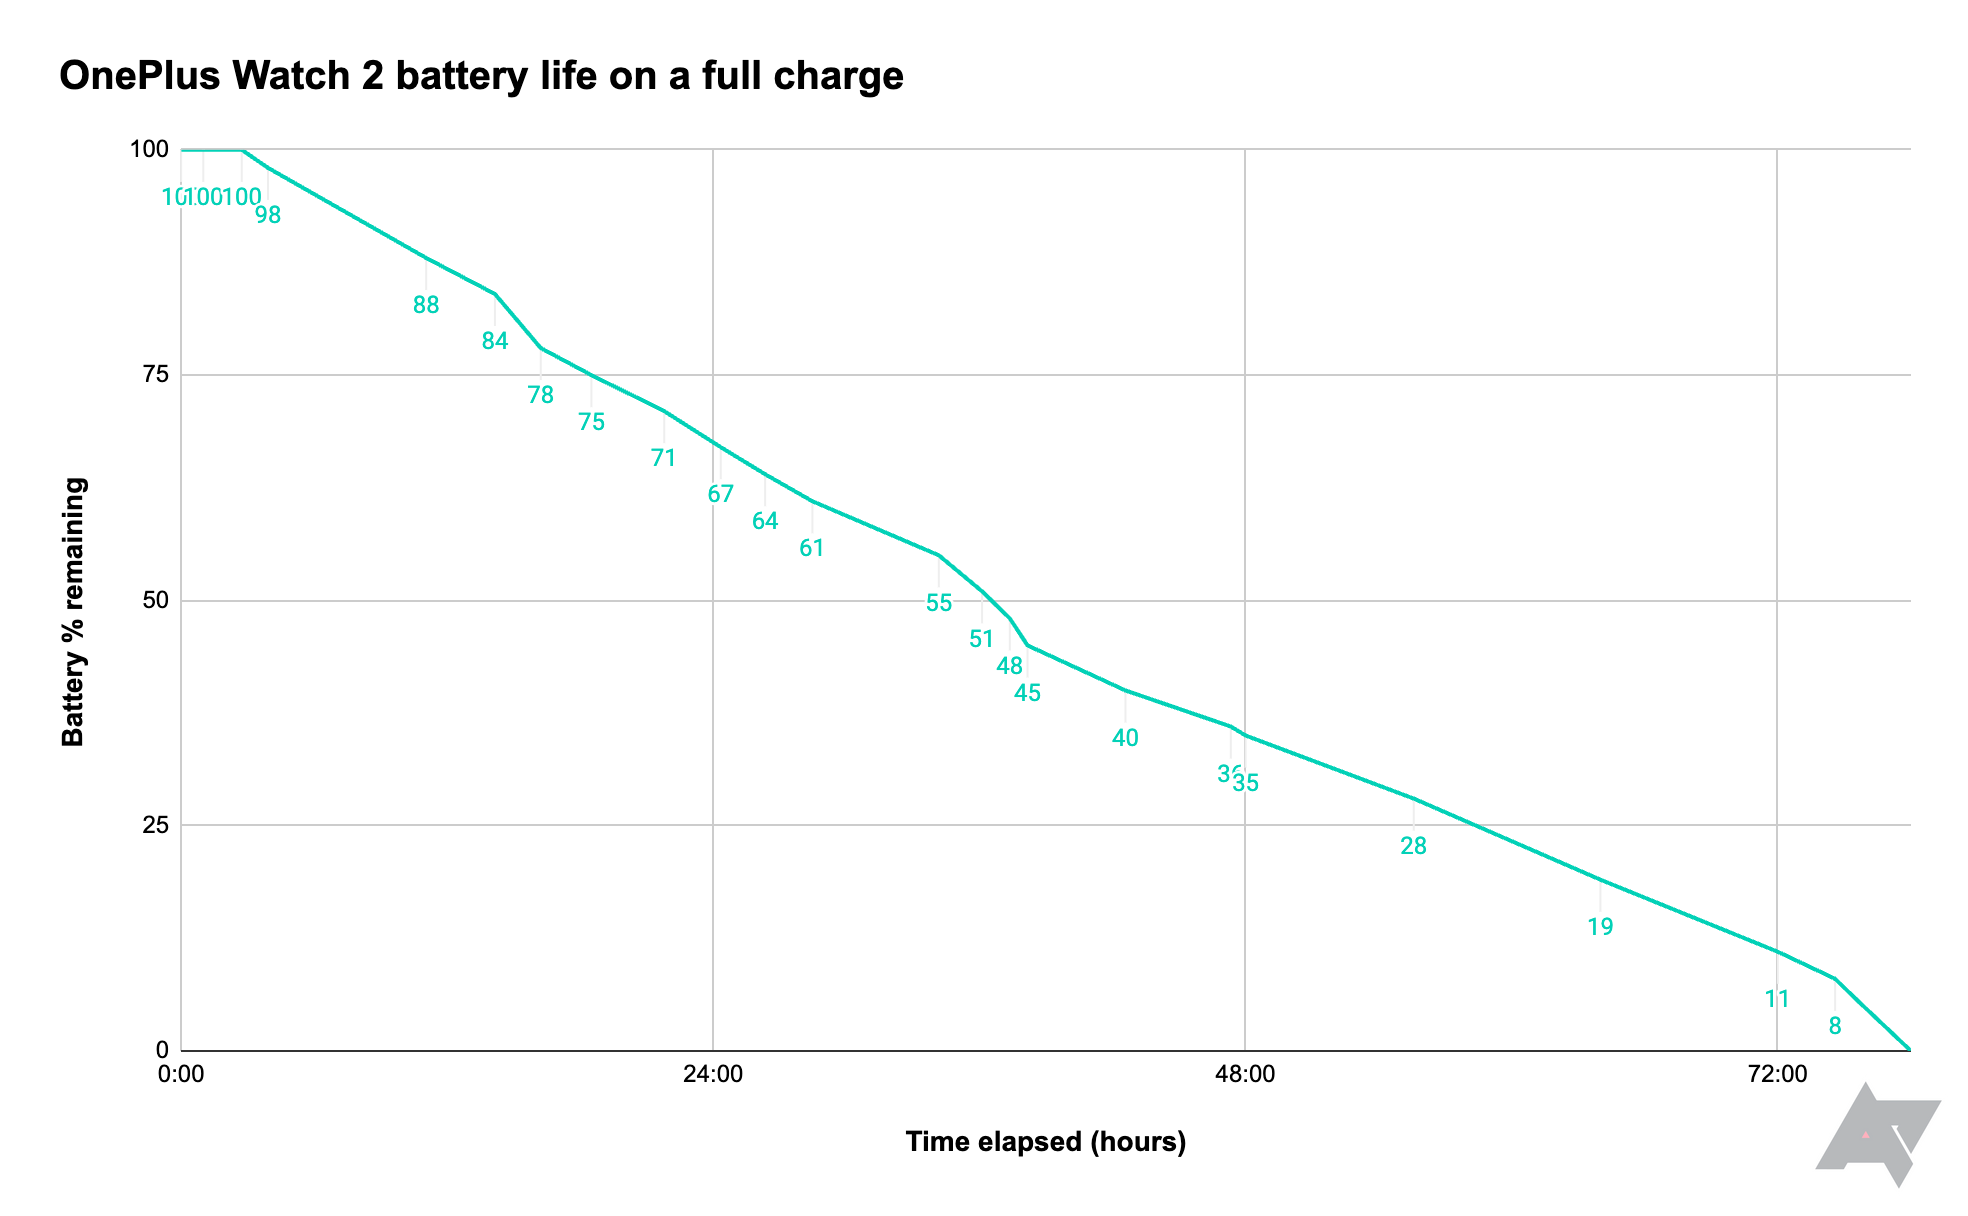 Gráfico mostrando a duração da bateria do OnePlus Watch 2, desde a carga completa até a descarga